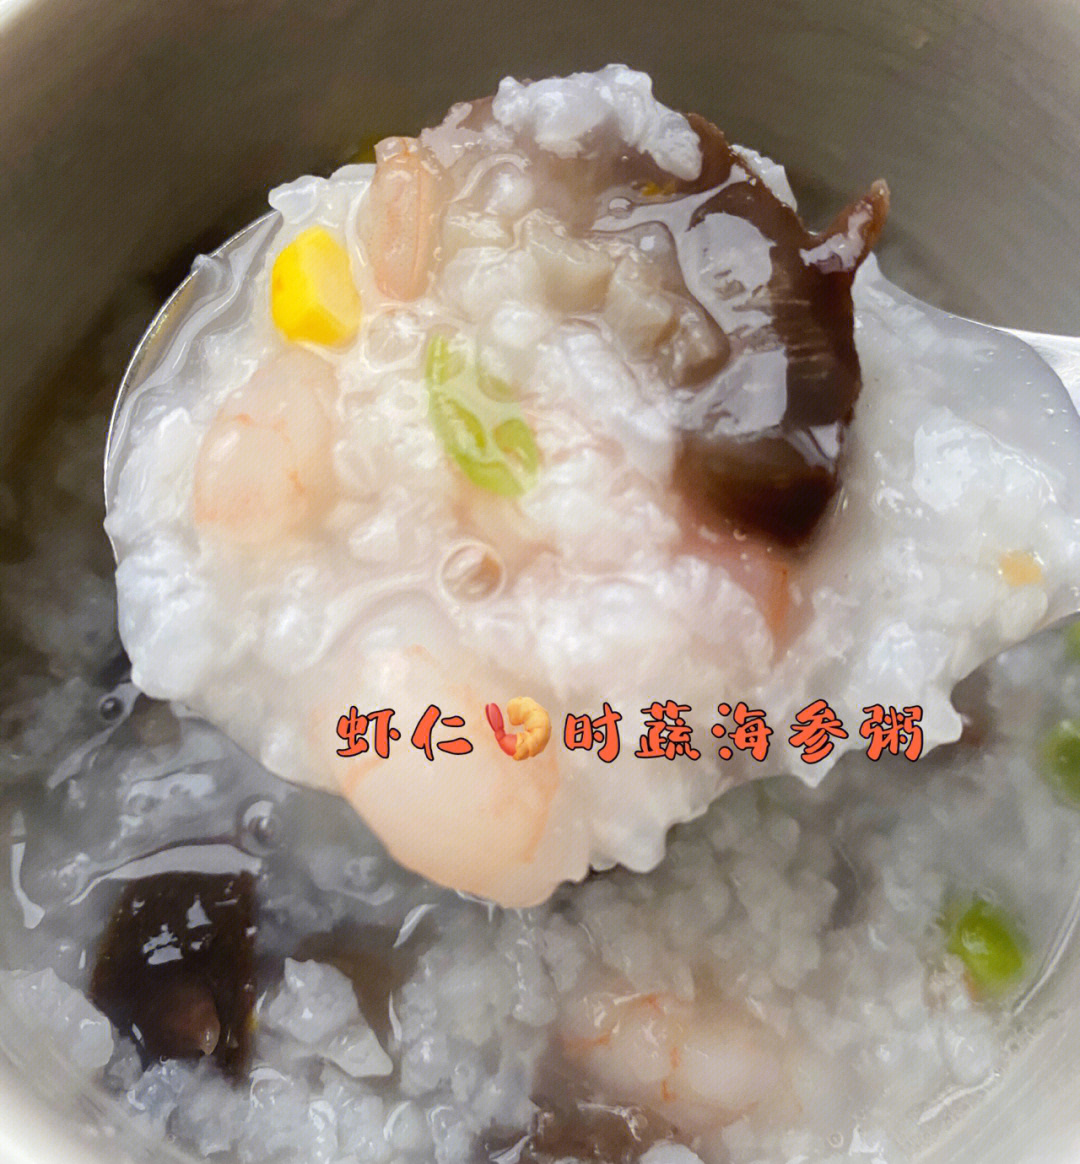 超级简单美味的海参粥炖法分享首先 要有好海参!